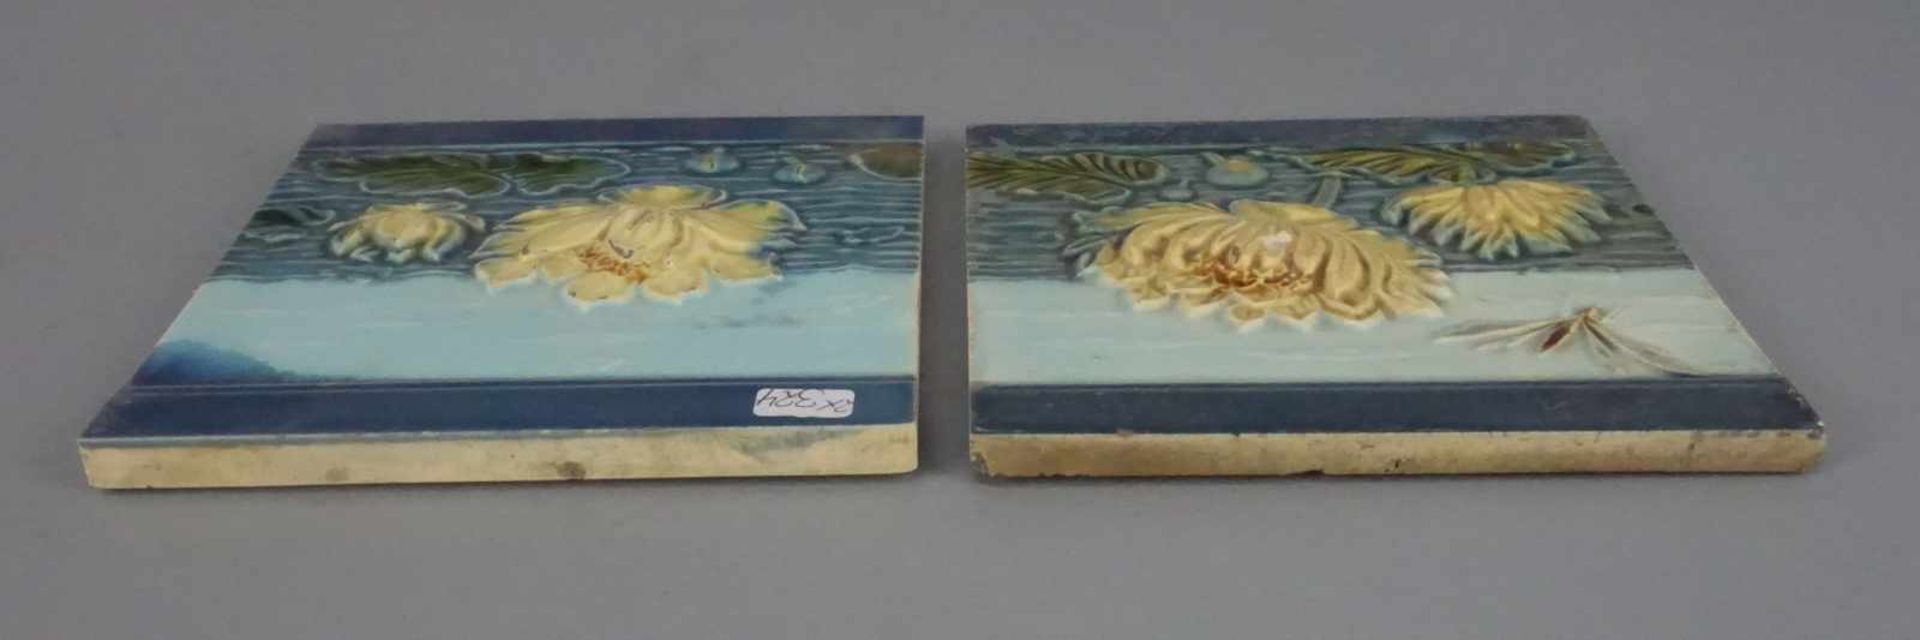 PAAR JUGENDSTIL - FLIESEN / two art nouveau tiles, heller Scherben, um 1900. Reliefdekor mit - Image 4 of 6